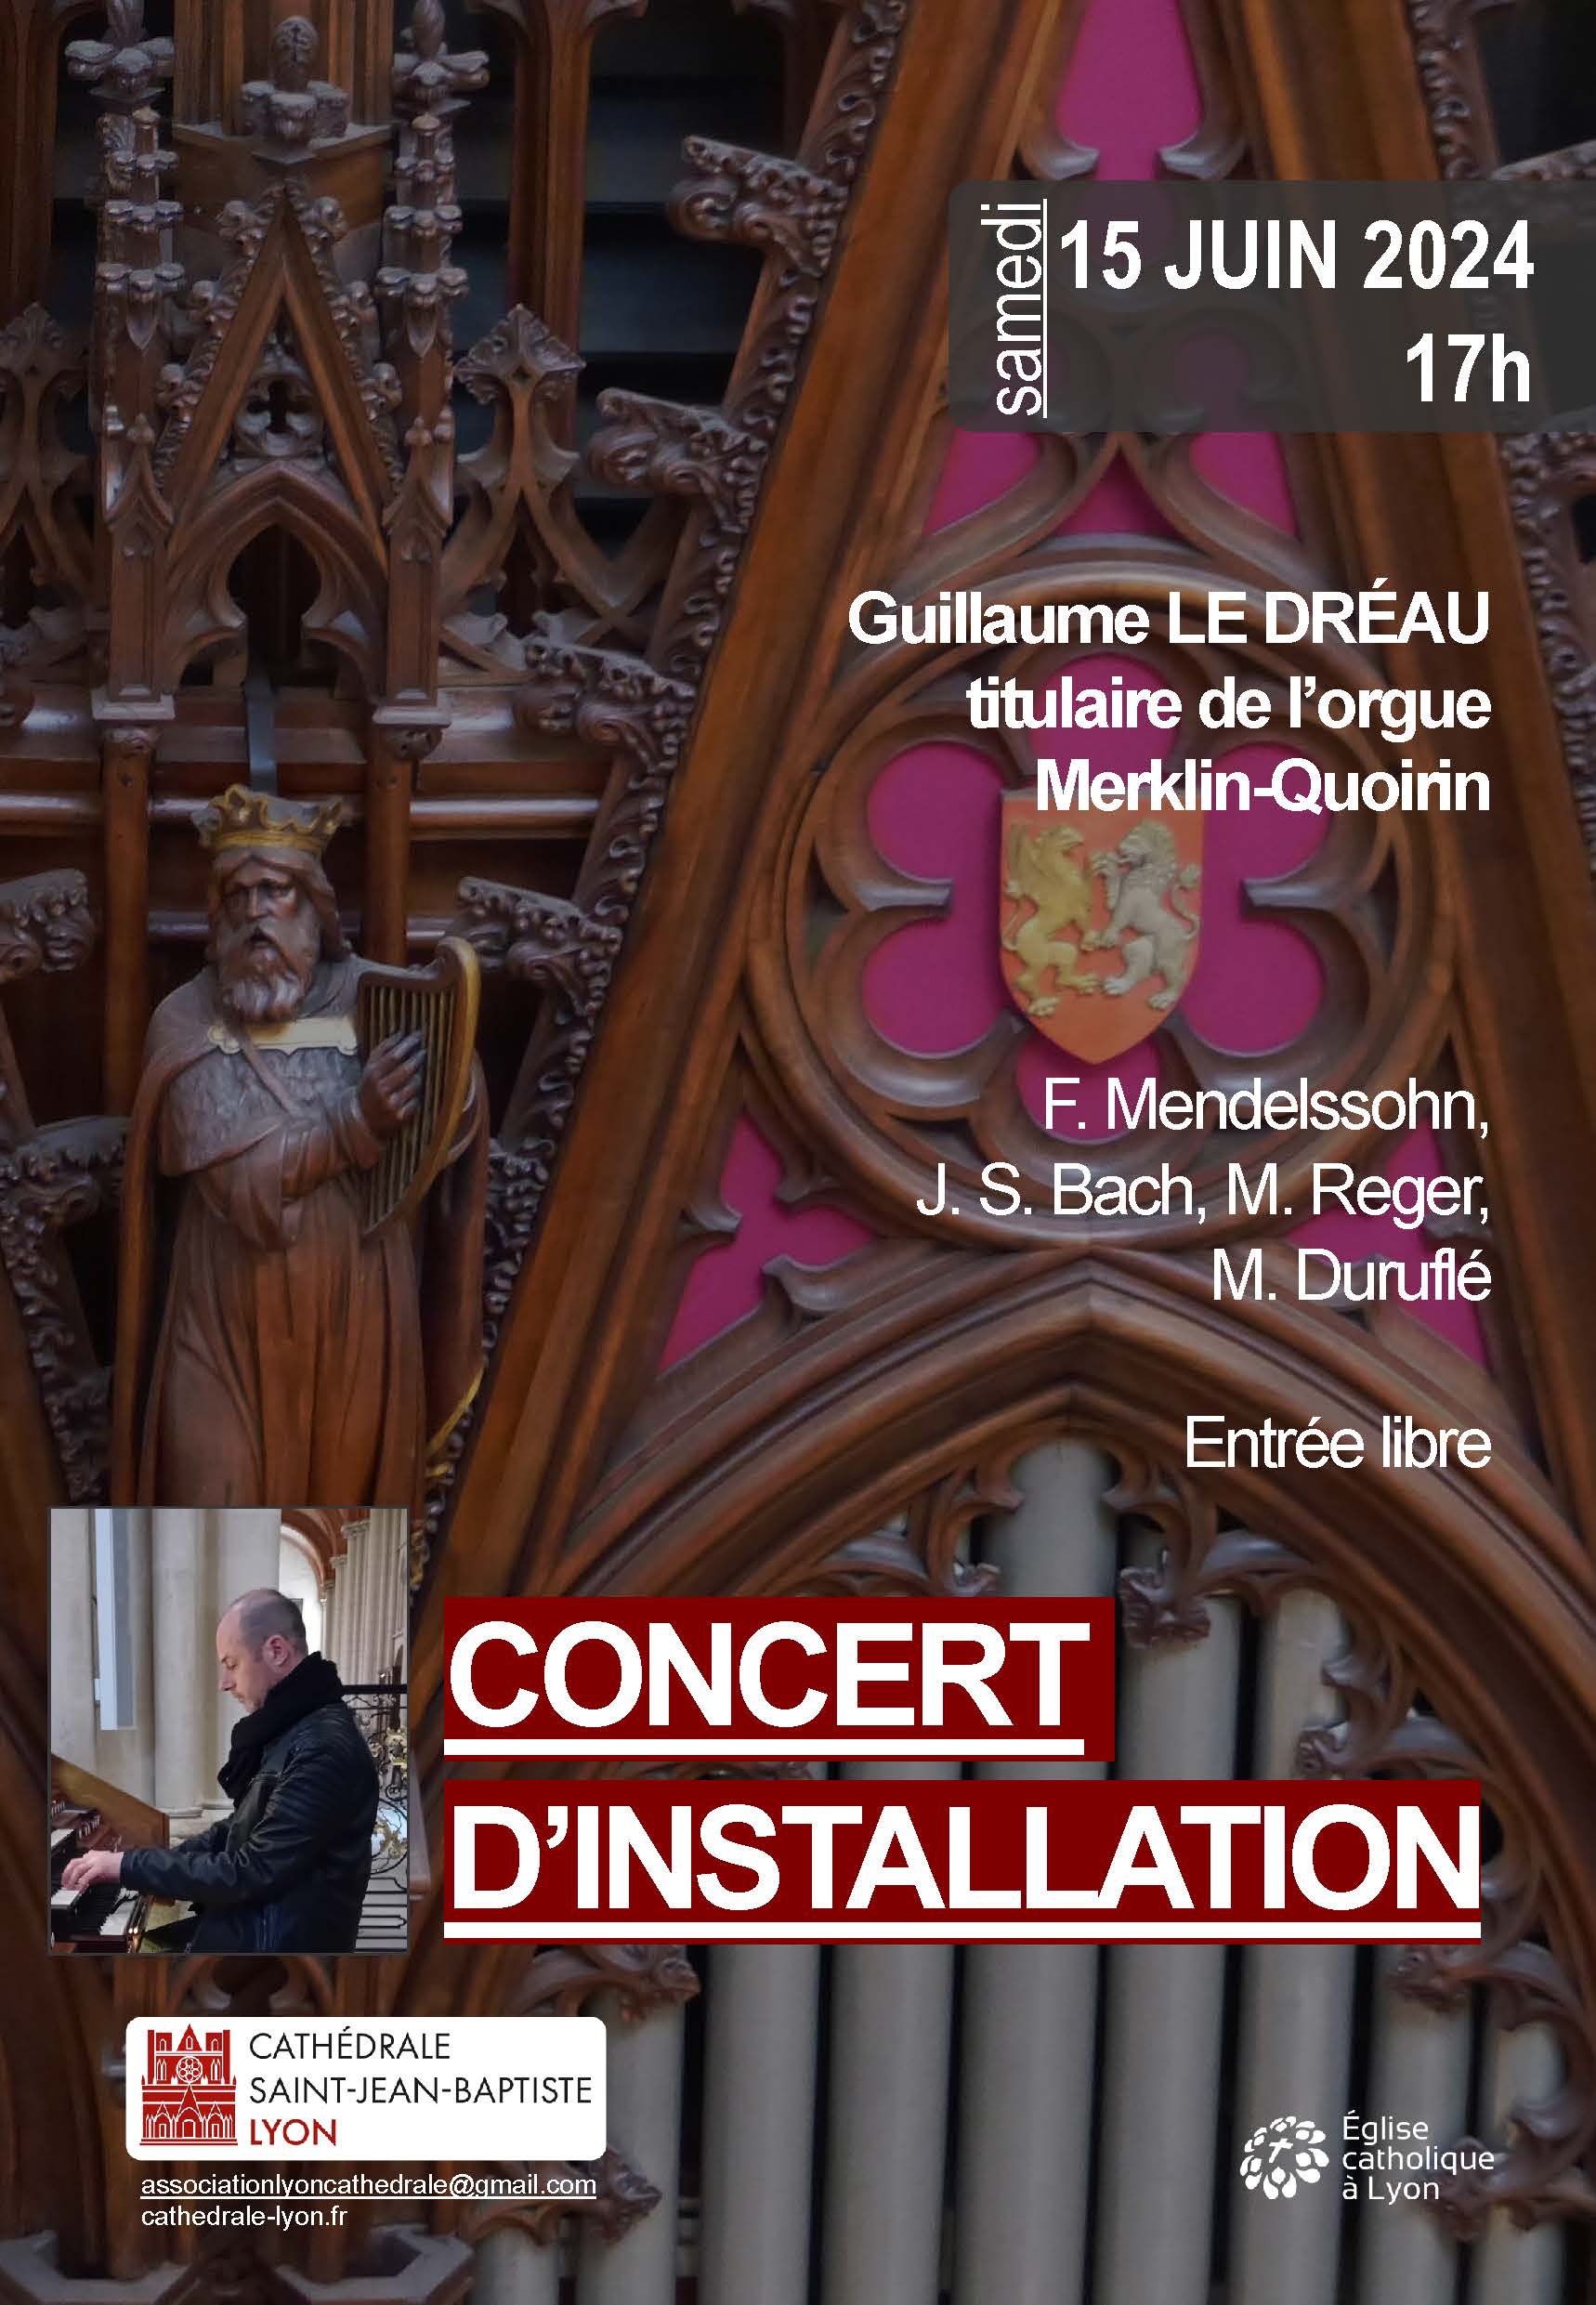 Concert d'installation de Guillaume Le Dréau, 15 juin à 17h